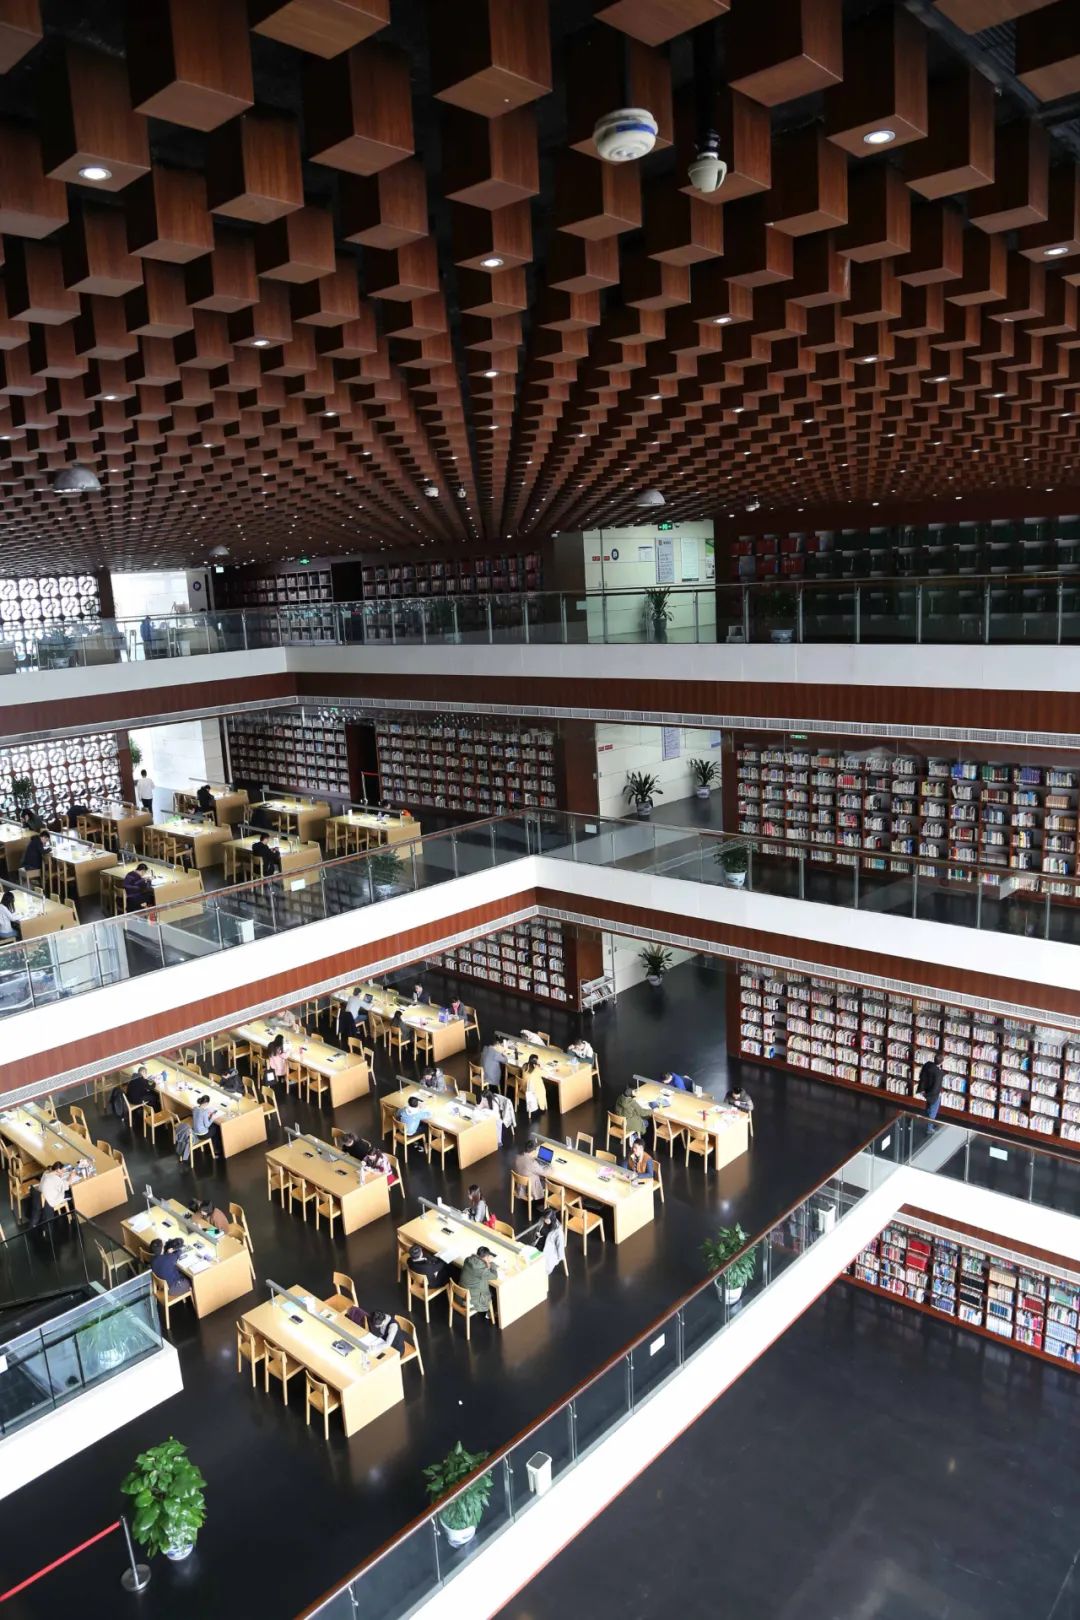 四川国际标榜图书馆图片